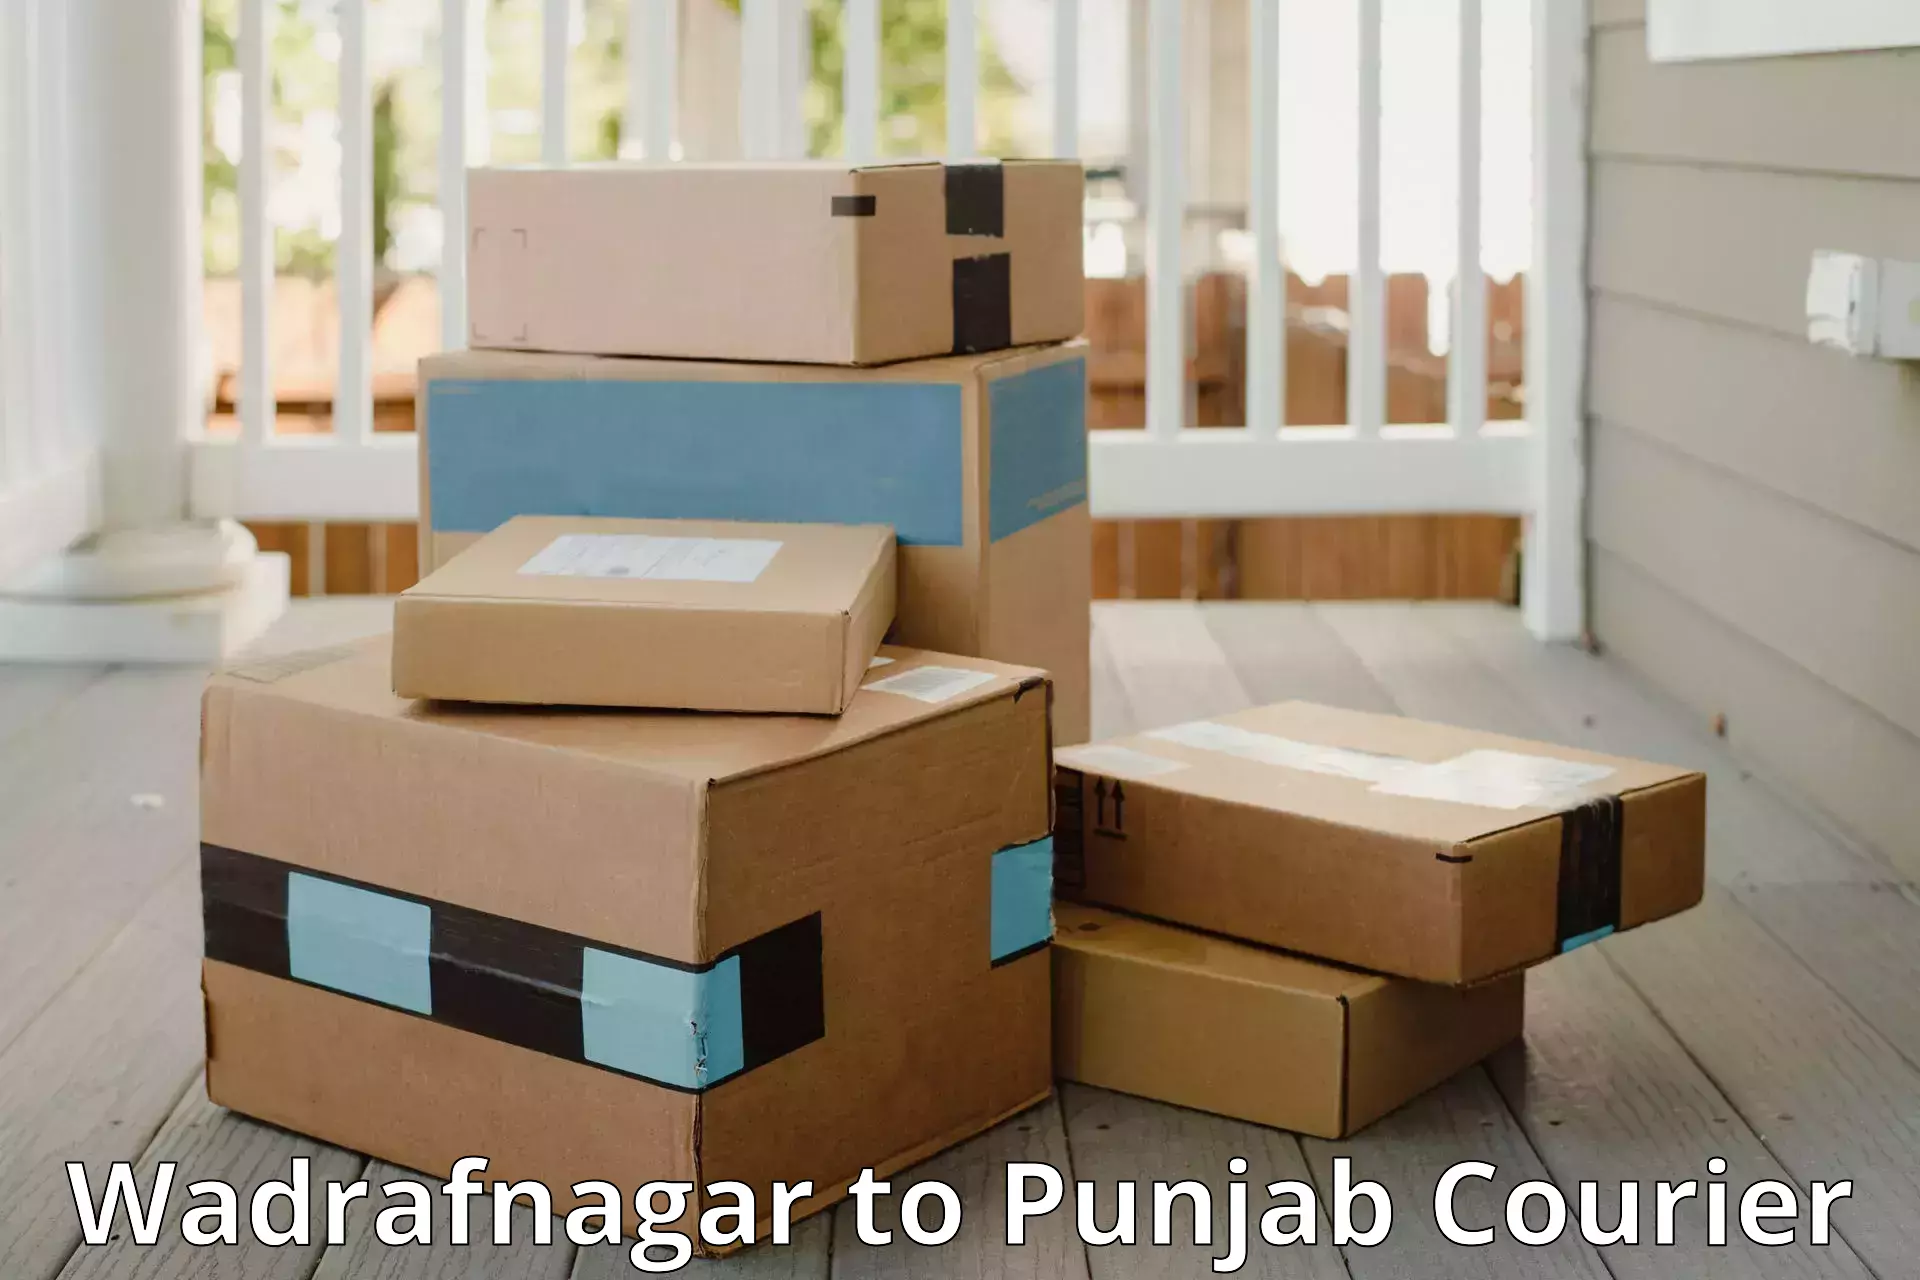 Luggage delivery system Wadrafnagar to Sirhind Fatehgarh